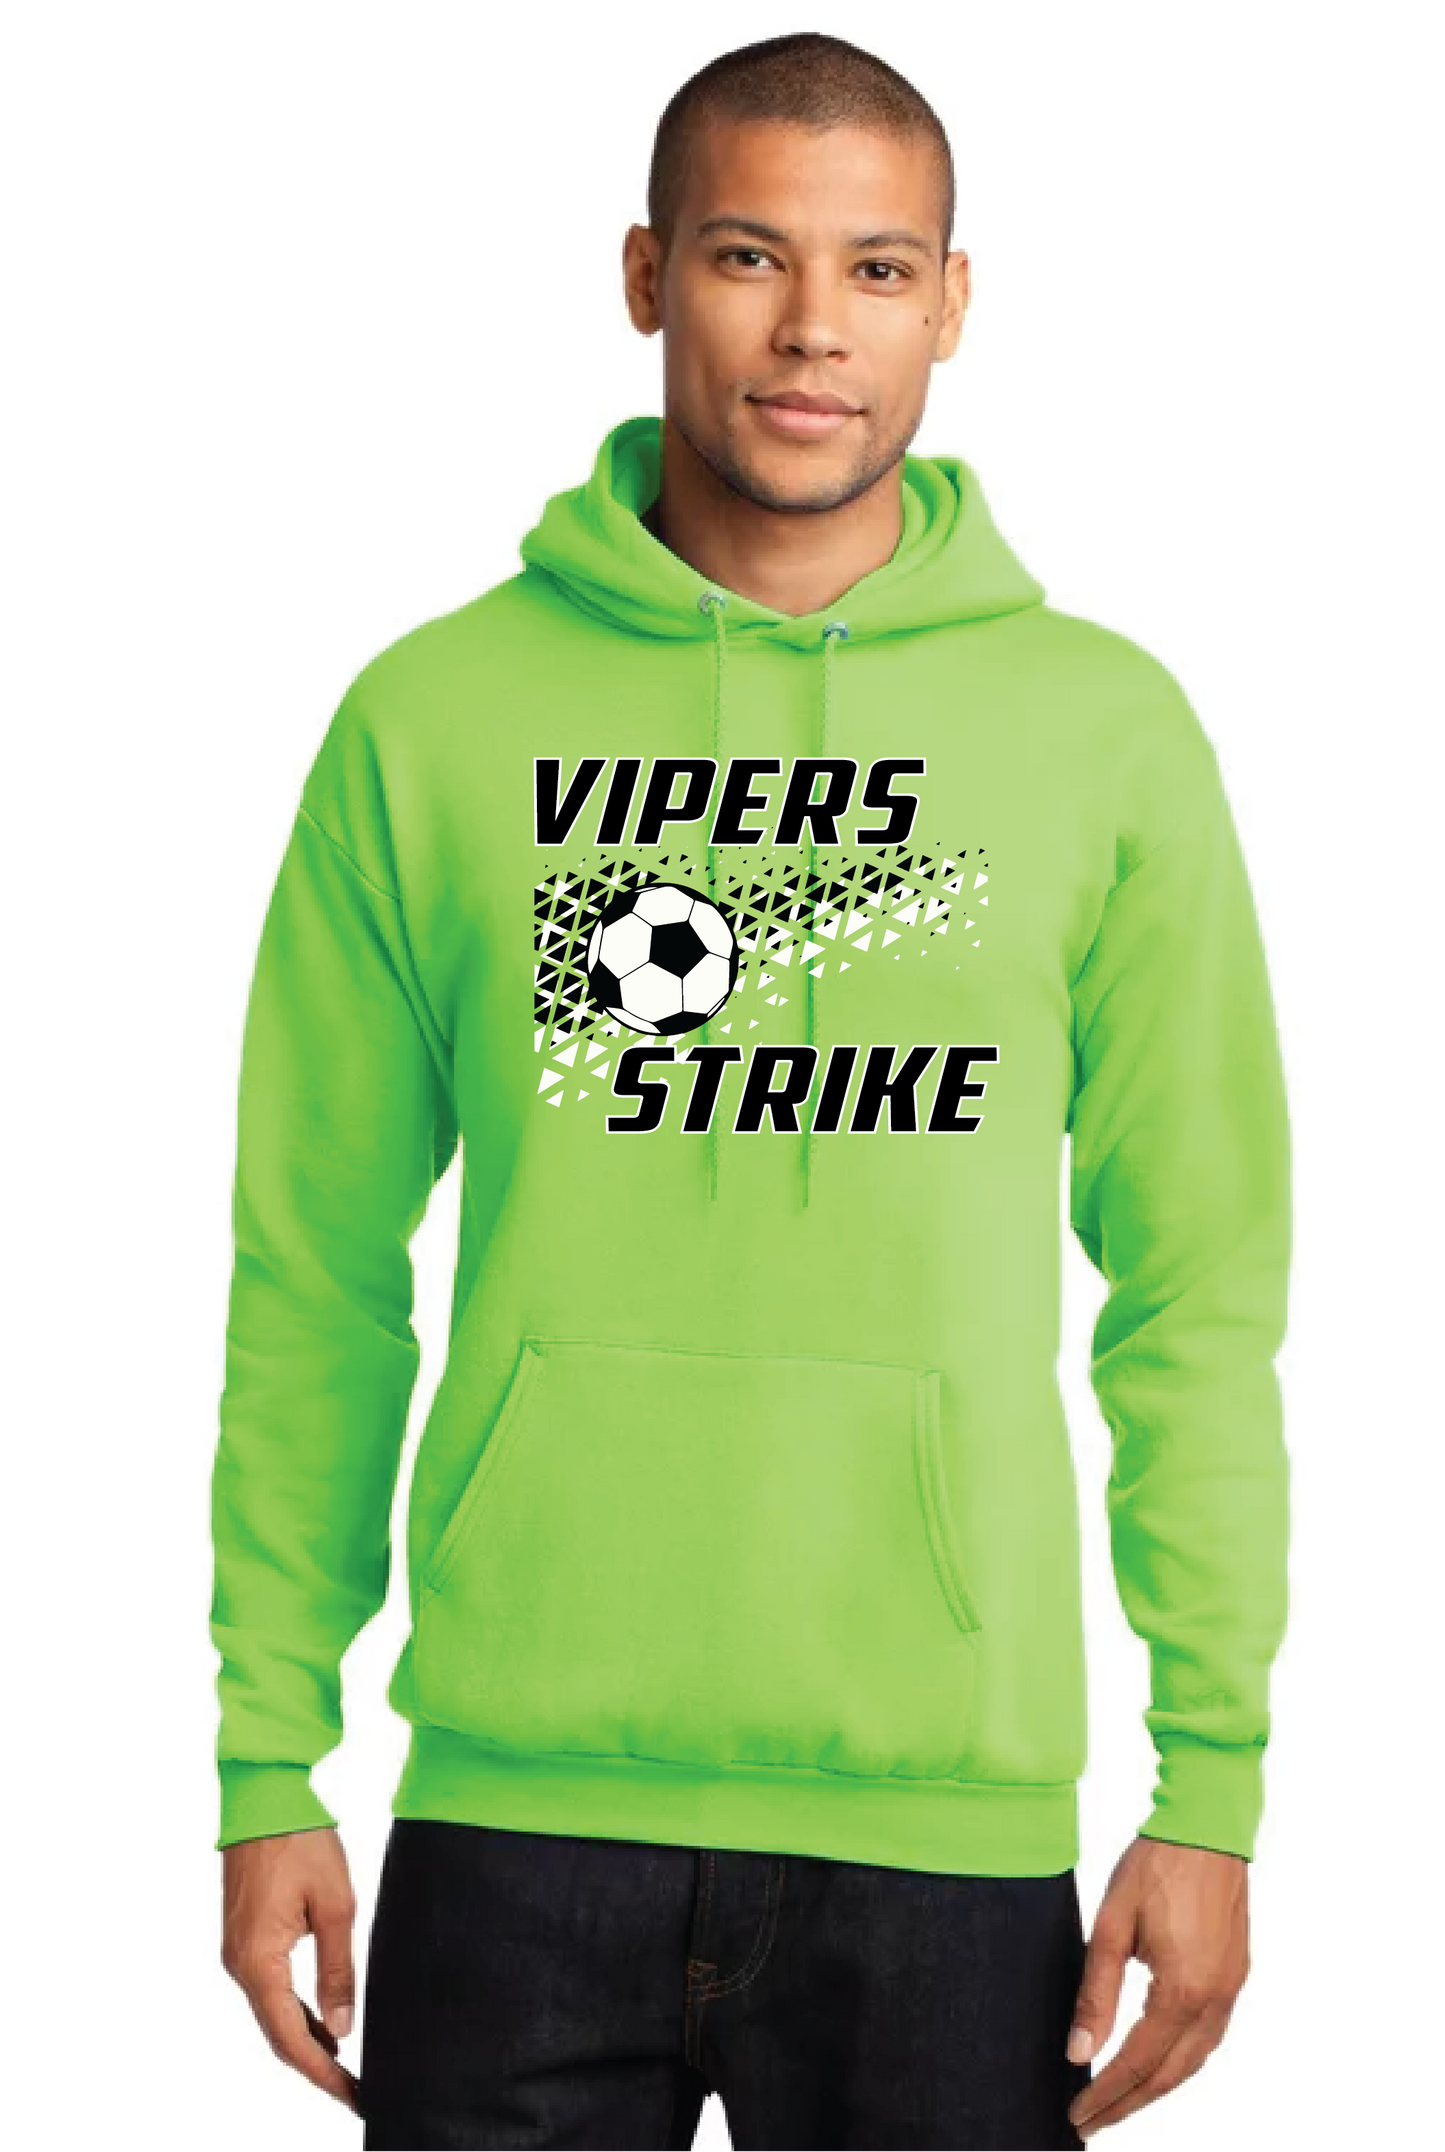 Vipers Strike